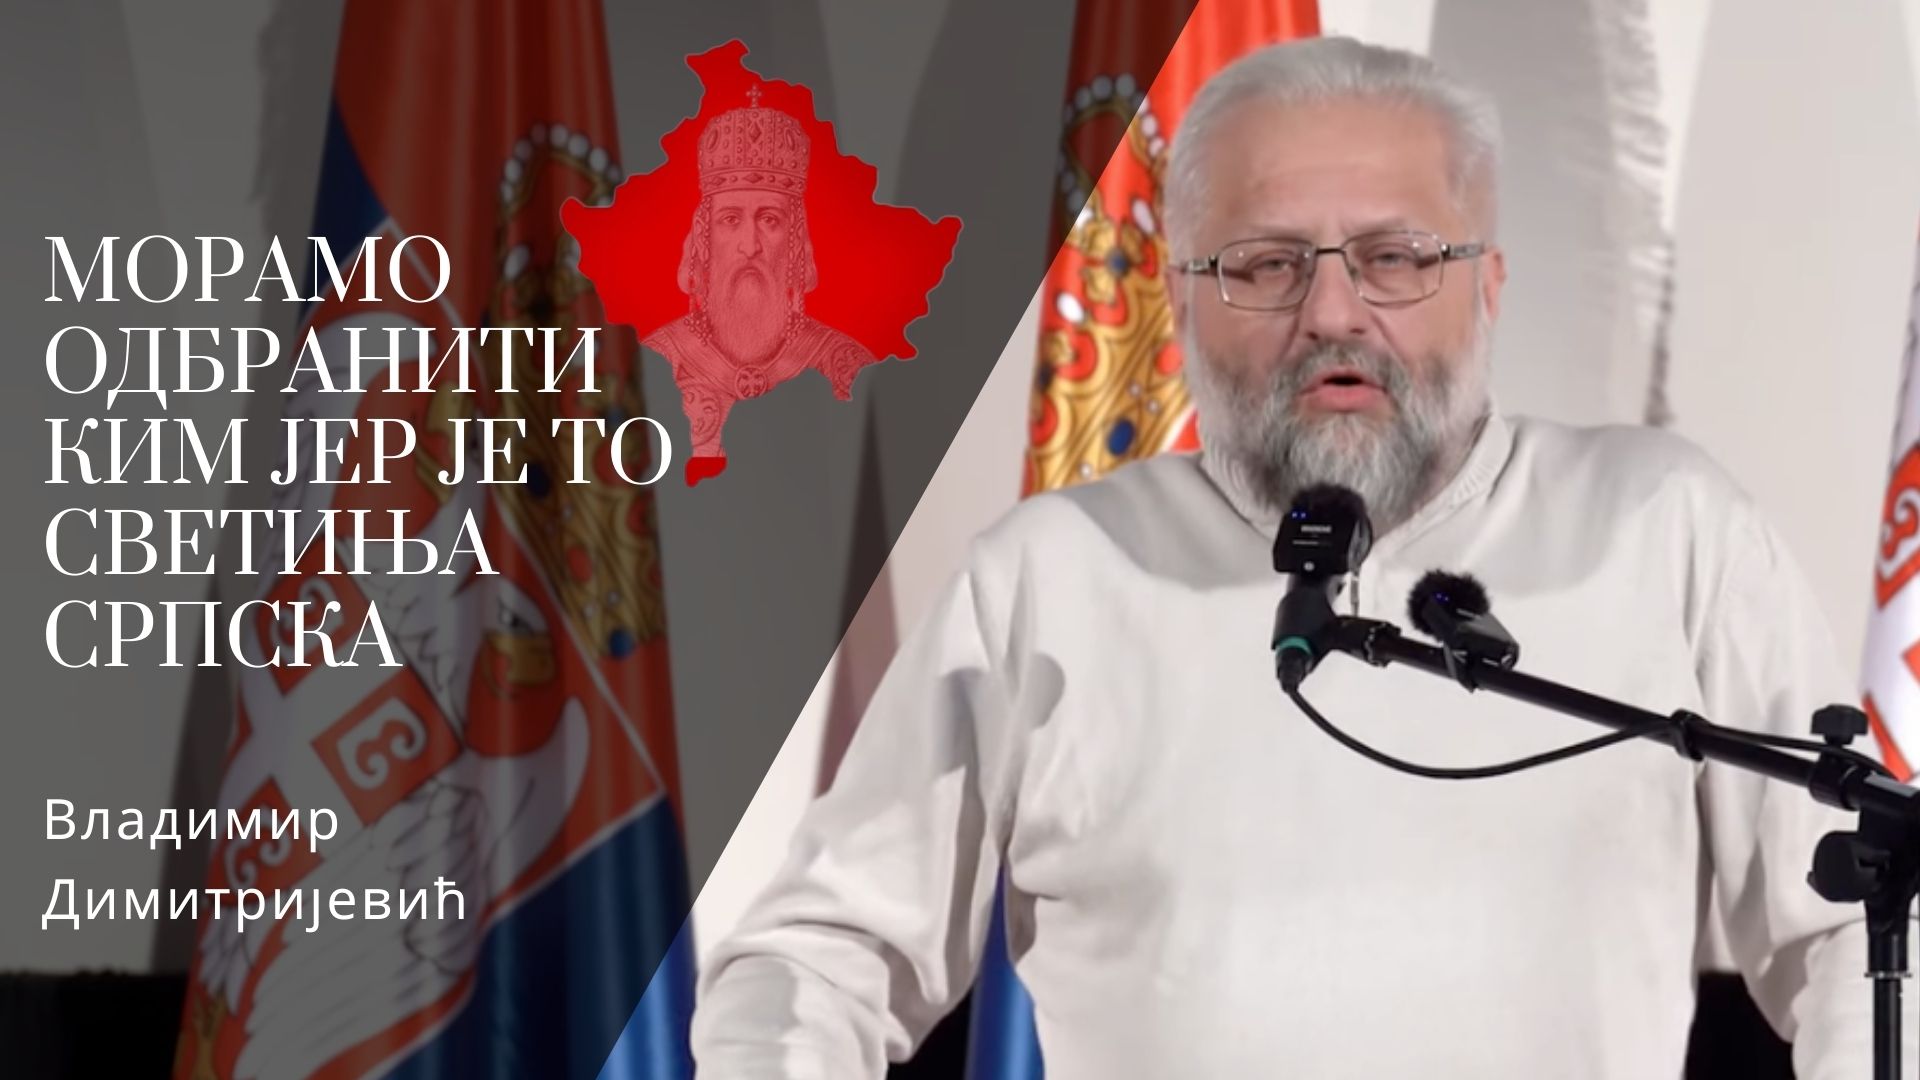 Владимир Димитријевић: Морамо одбранити КиМ јер је то светиња српска